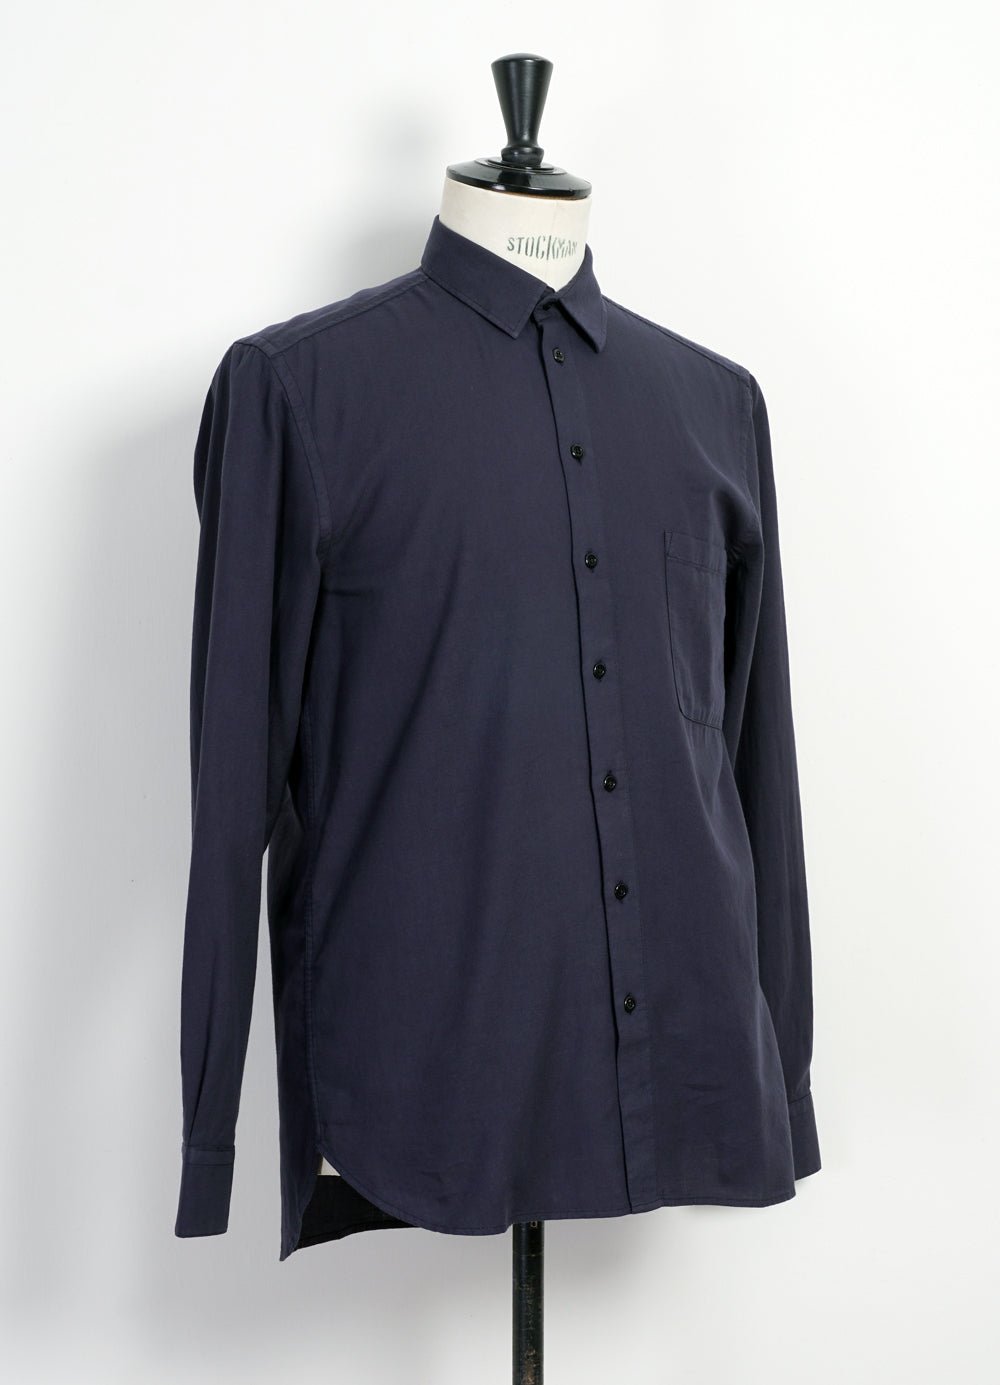 HANSEN GARMENTS - HENNING | Casual Classic Shirt | Navy - HANSEN Garments